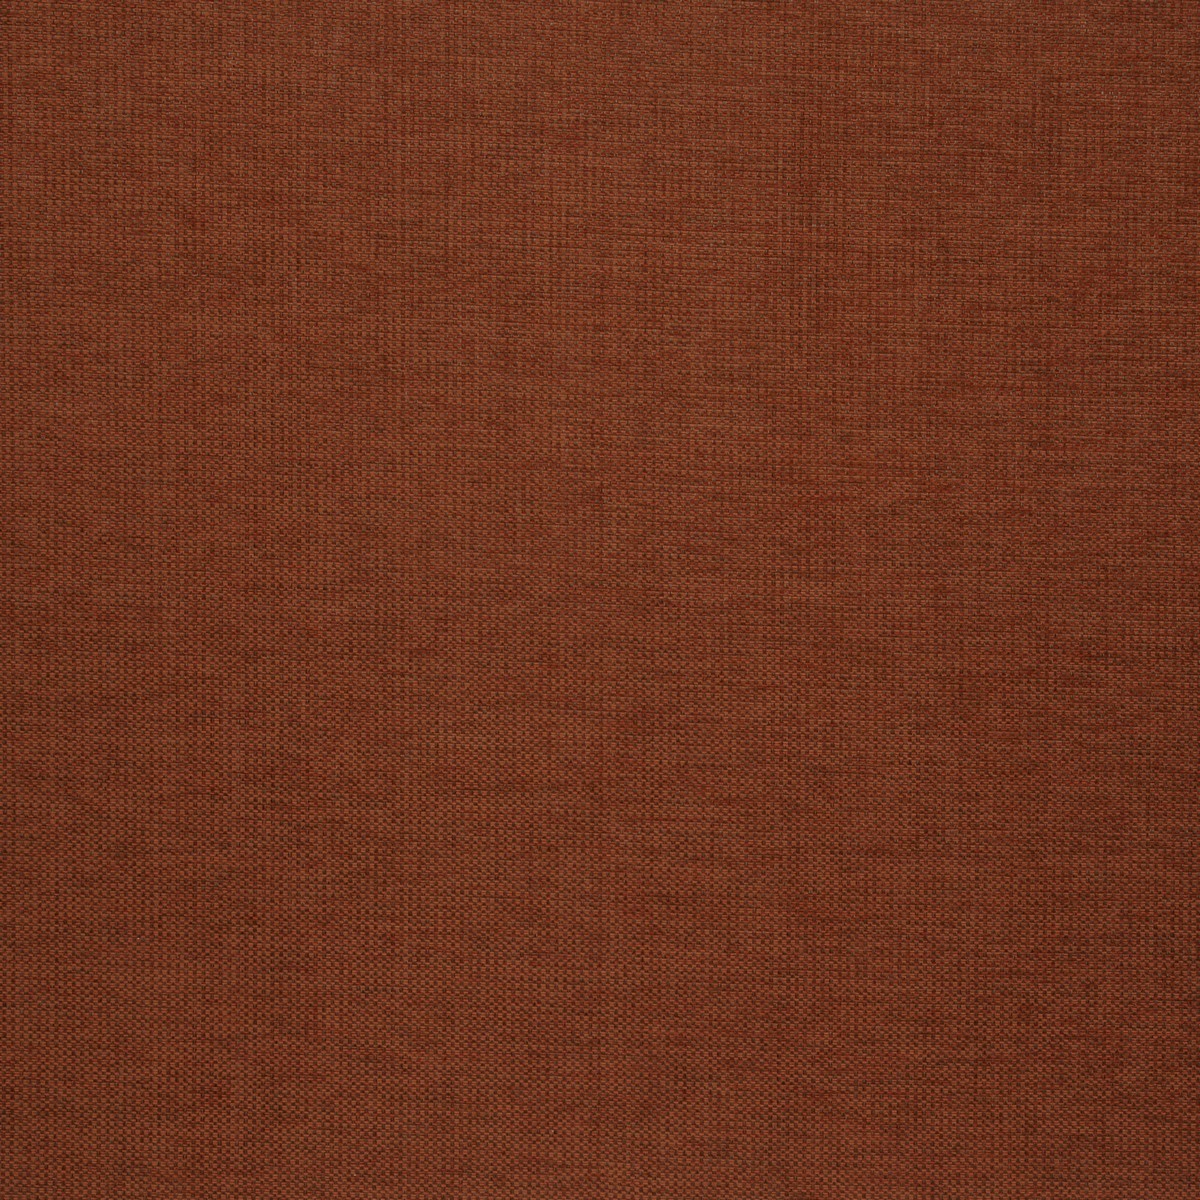 Brecon Cinnamon Fabric by iLiv